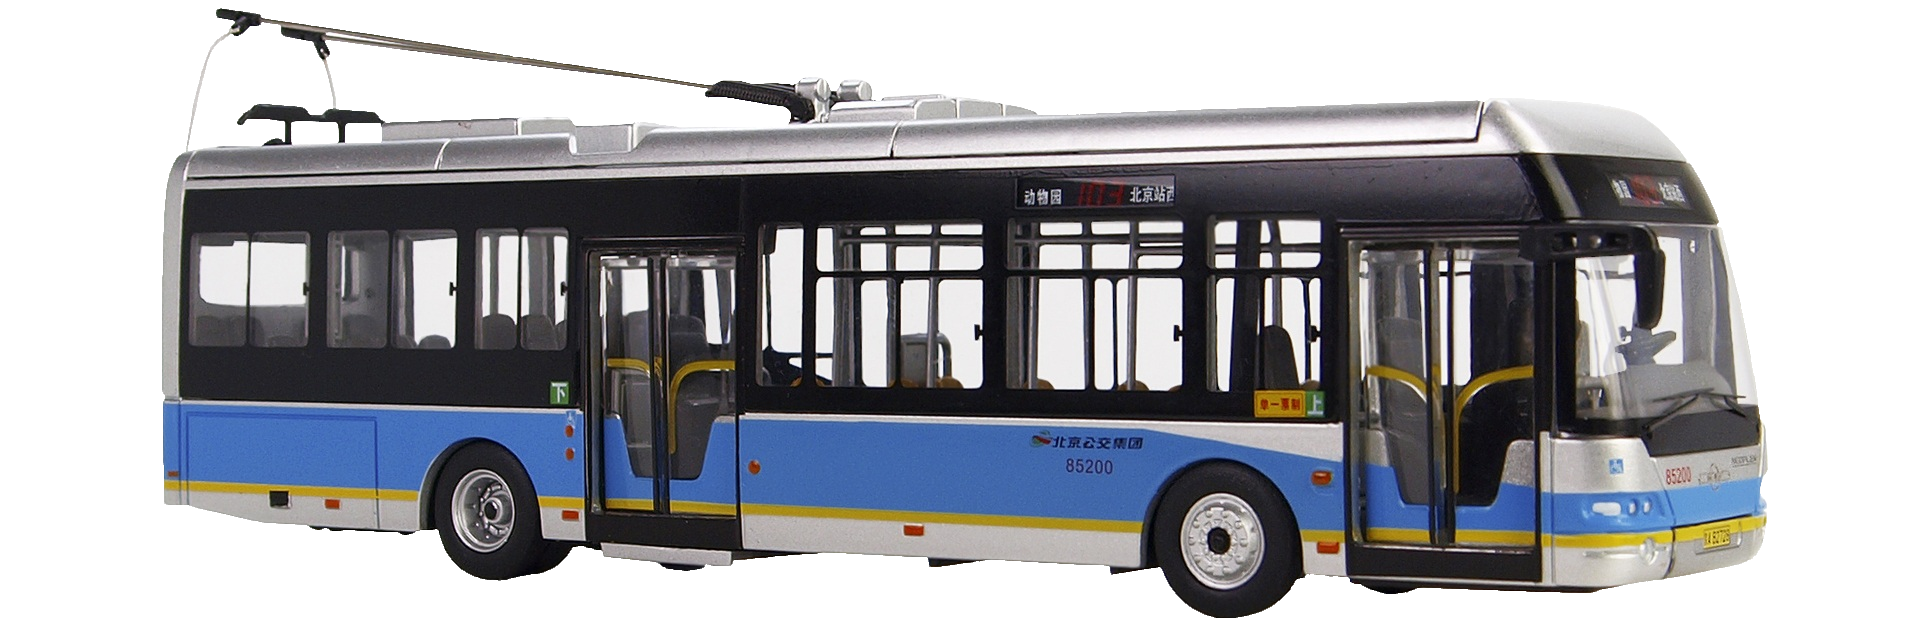 bus-76